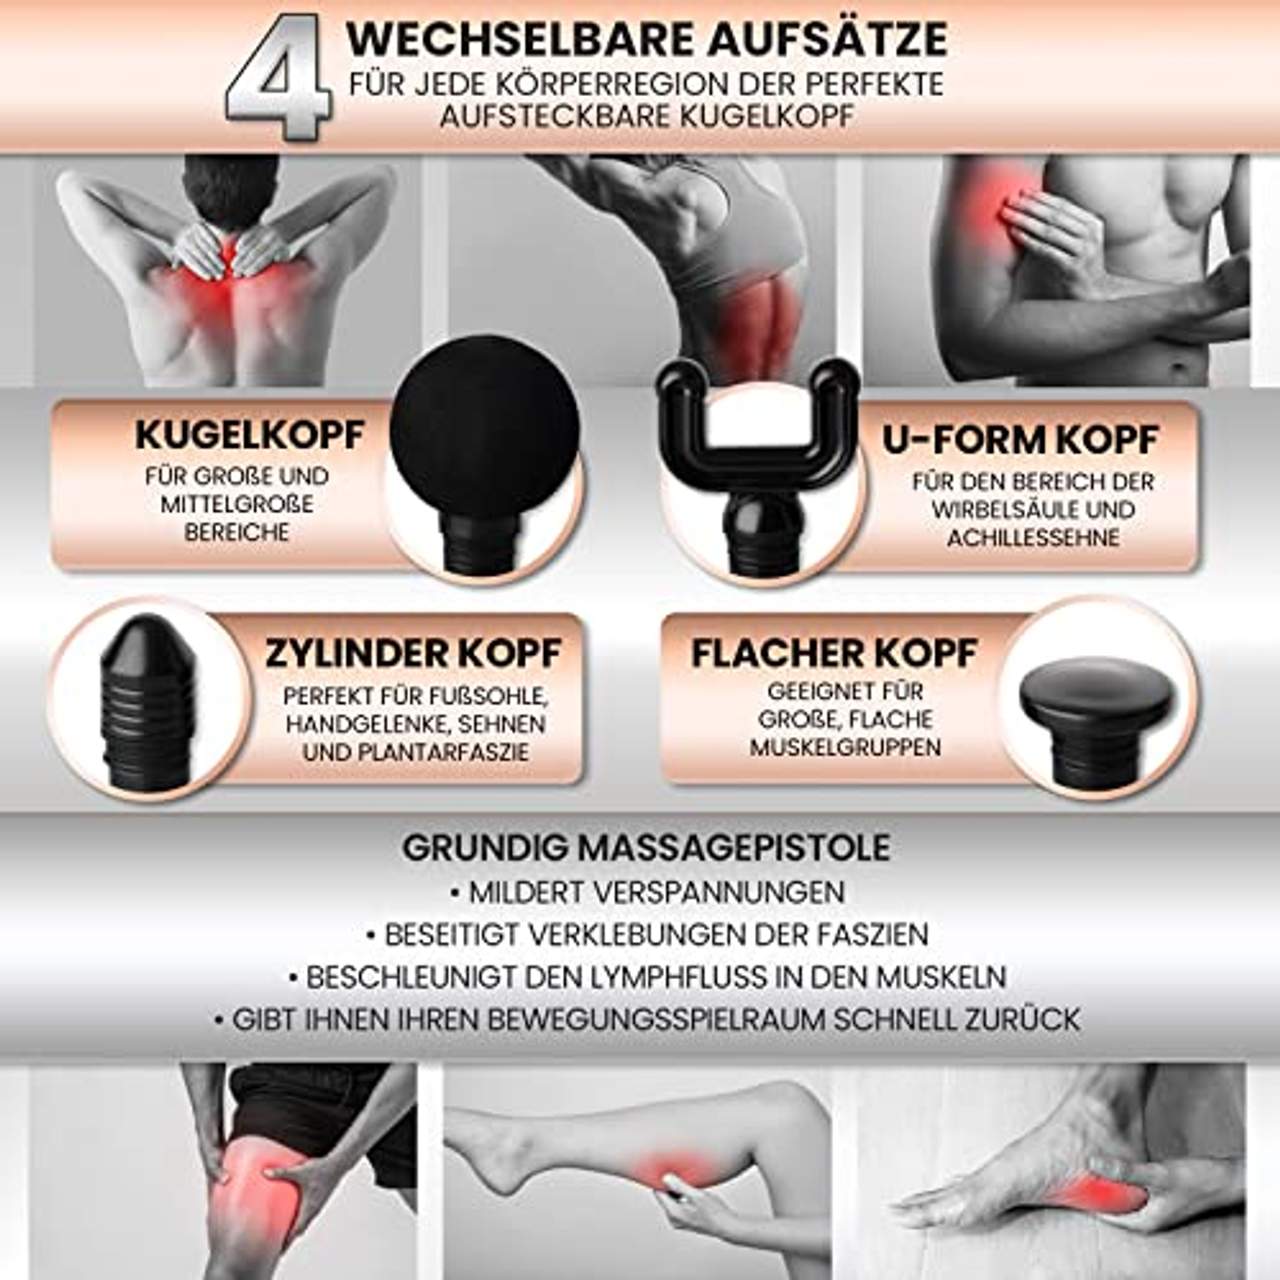 GRUNDIG Massagepistole Massagegerät mit Tiefenwärme